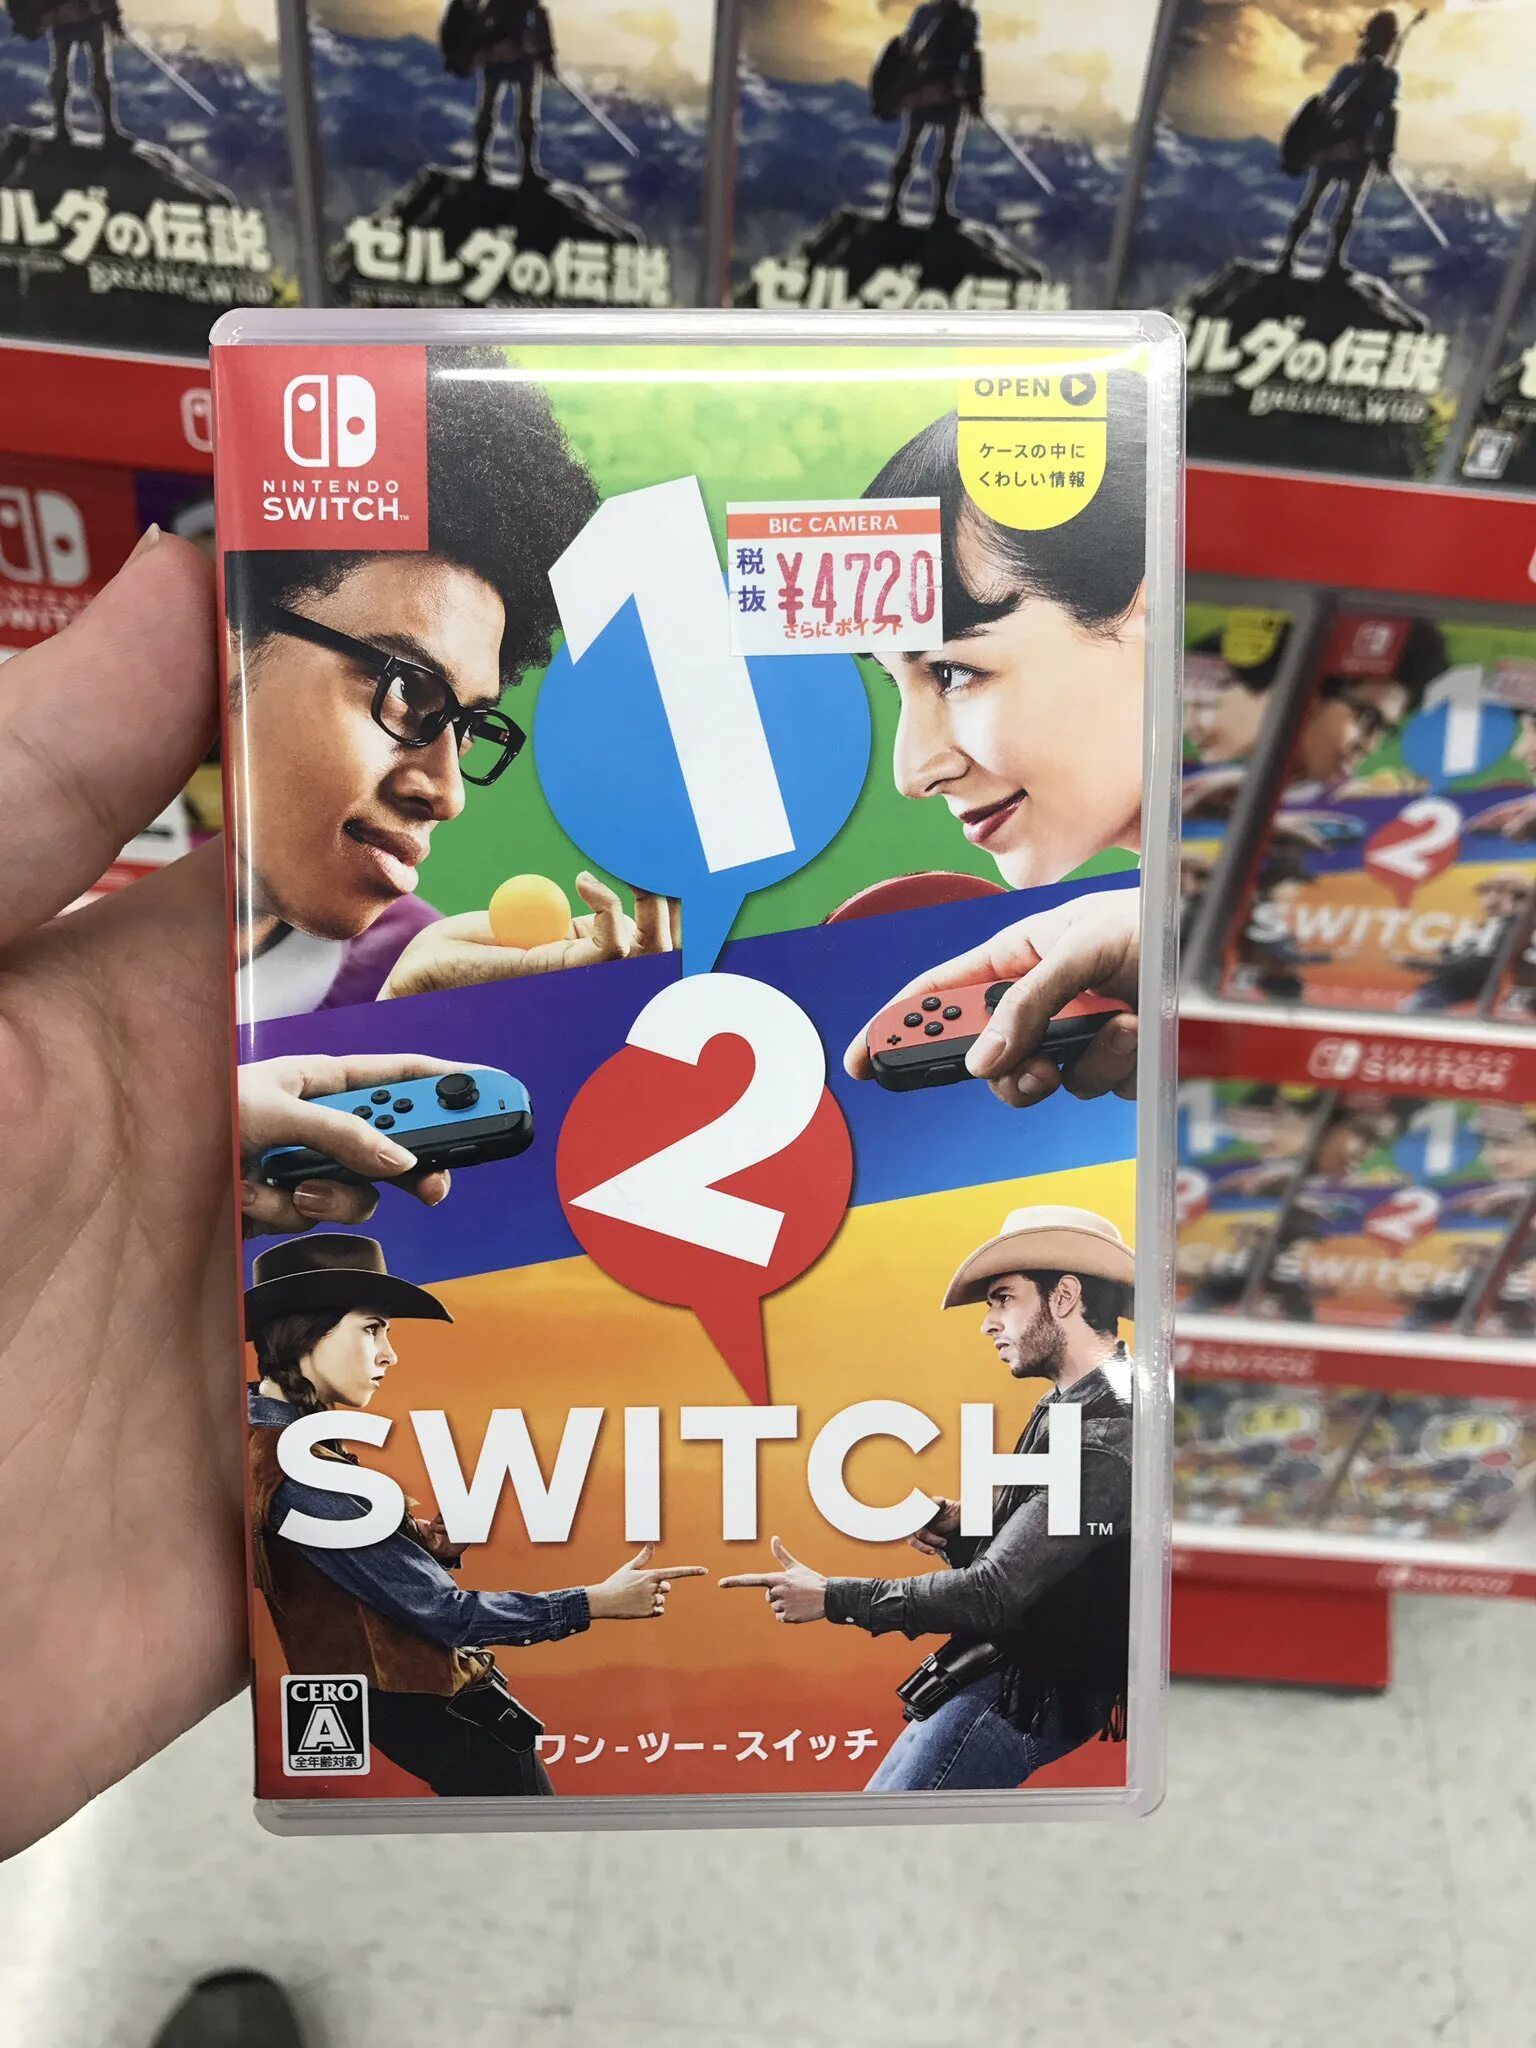 Игры на switch список. Nintendo Switch игра 1 2. Карточки на Nintendo Switch. Карточки игры для Нинтендо свитч. Nintendo Switch игры для Nintendo Switch.